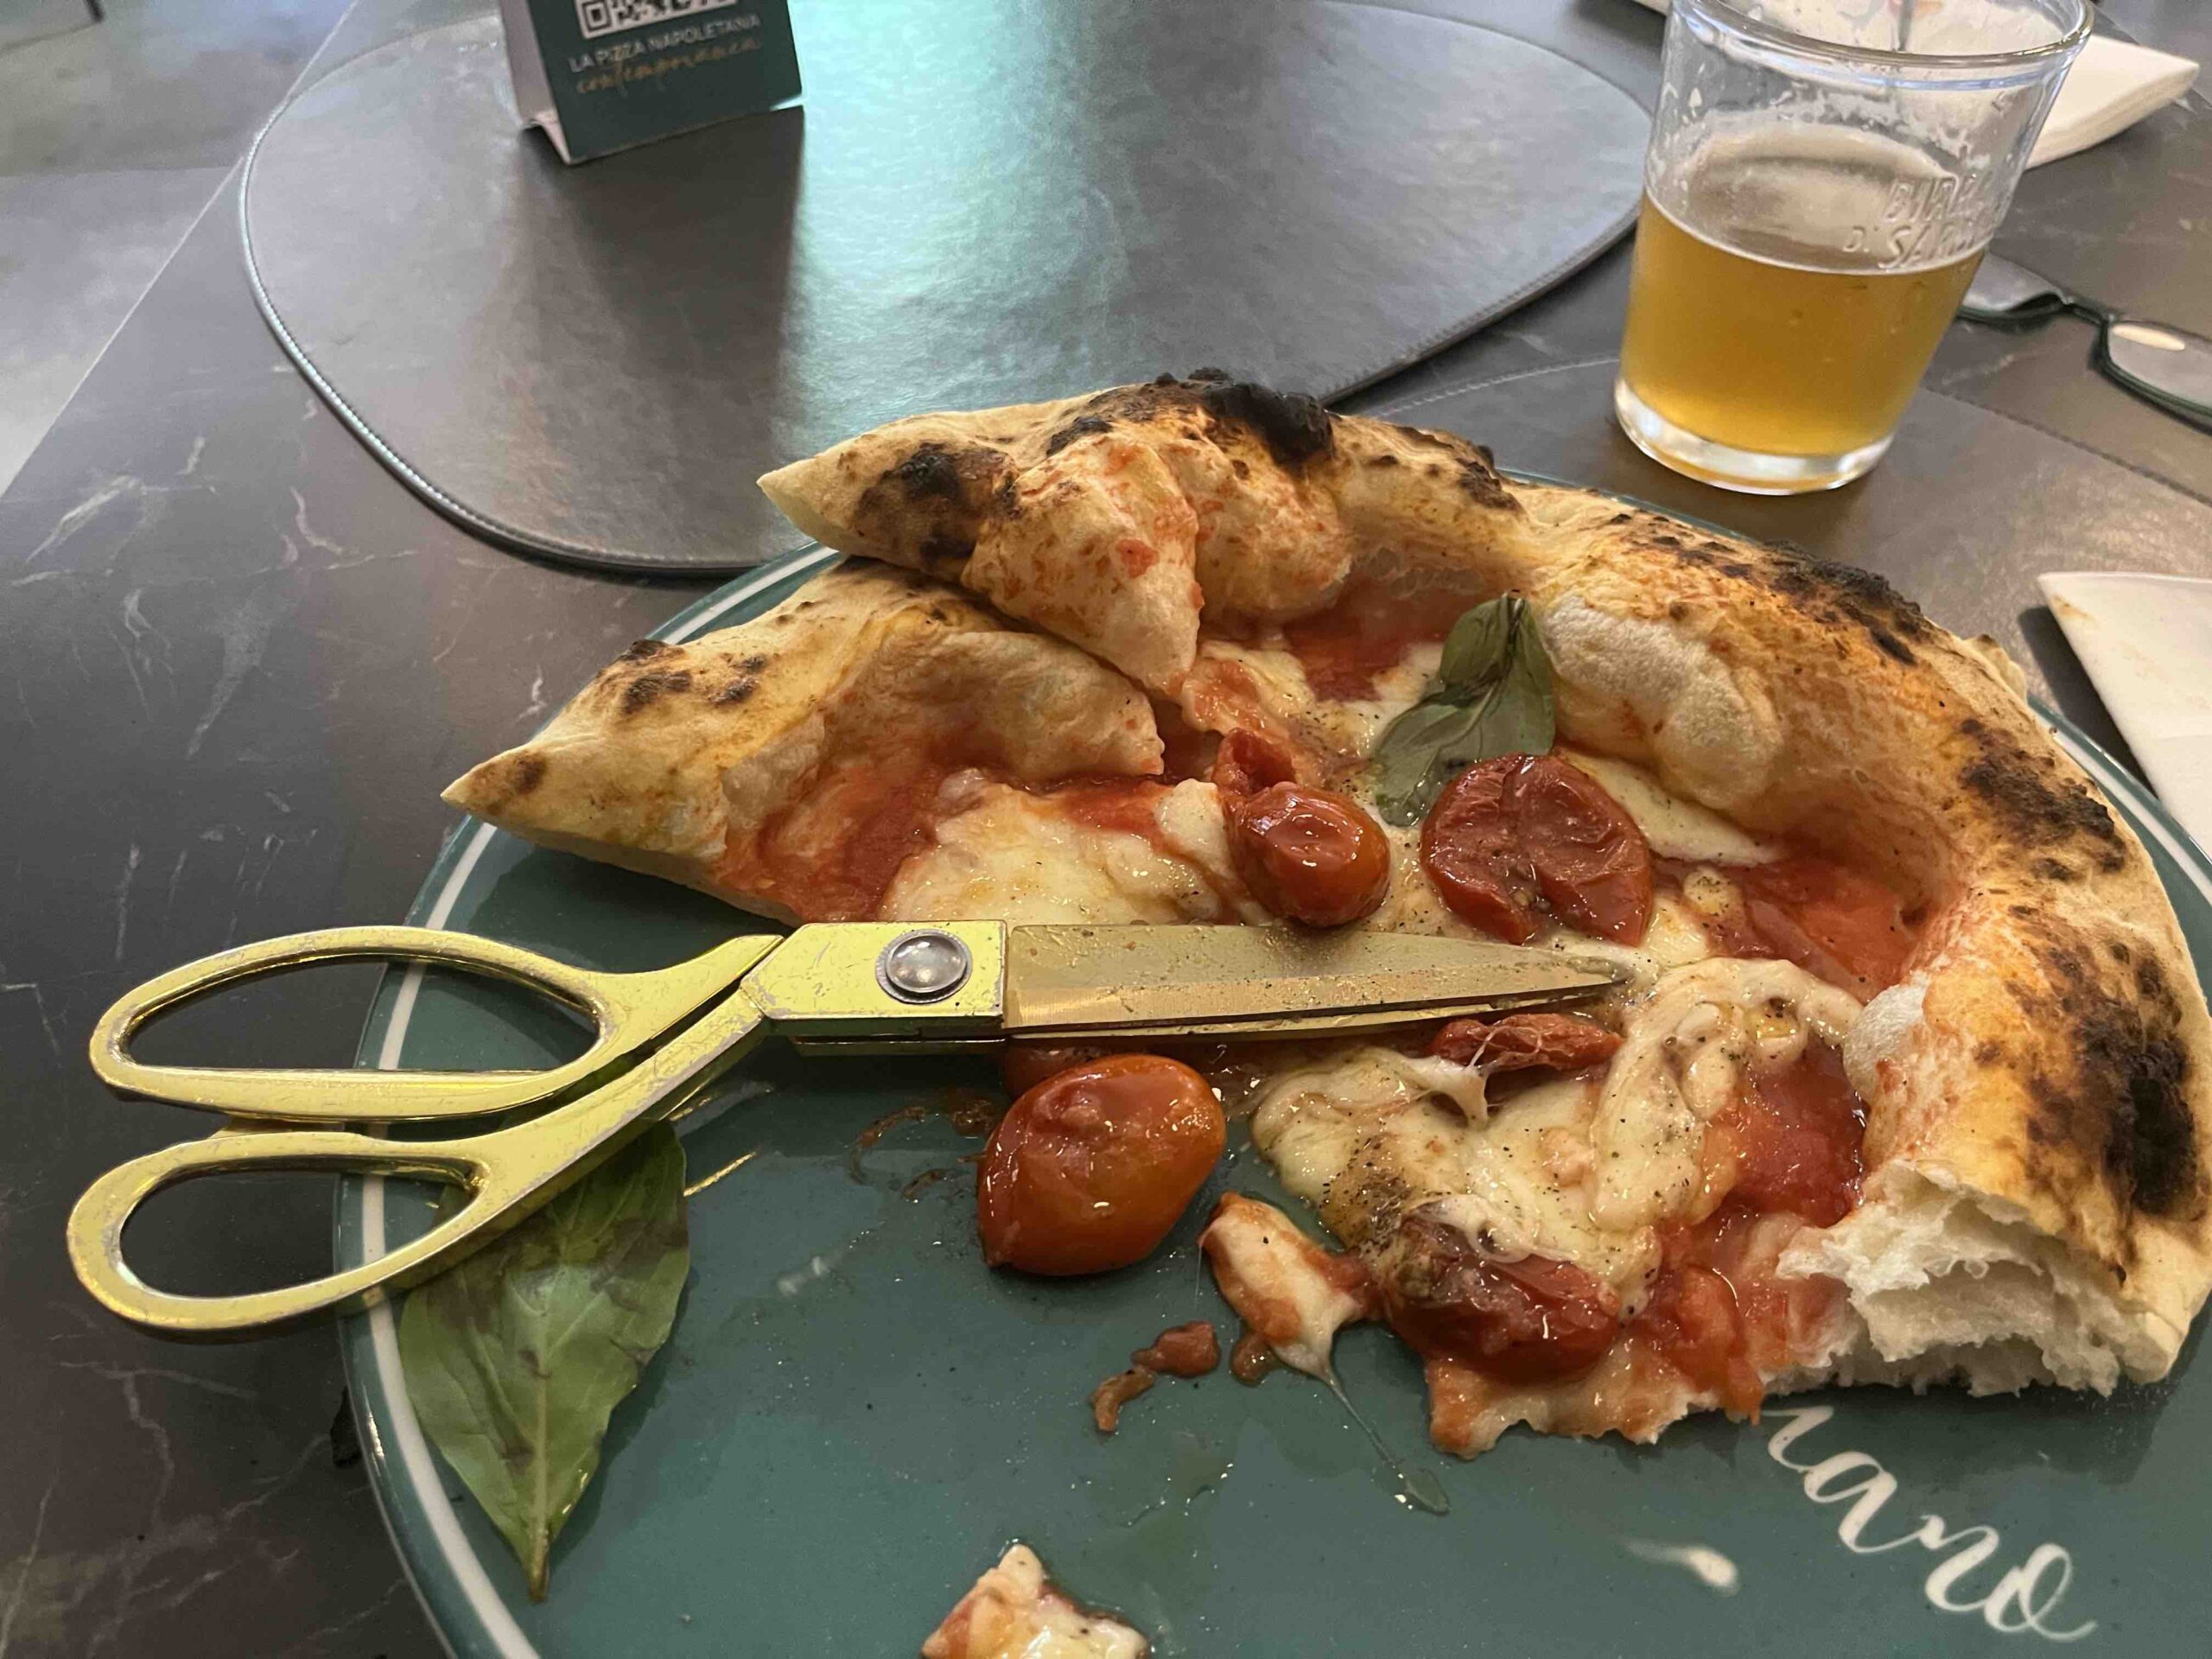 Vincenzo Capuano a Milano e quelle forbici ridicole per tagliare la pizza -  Puntarella Rossa